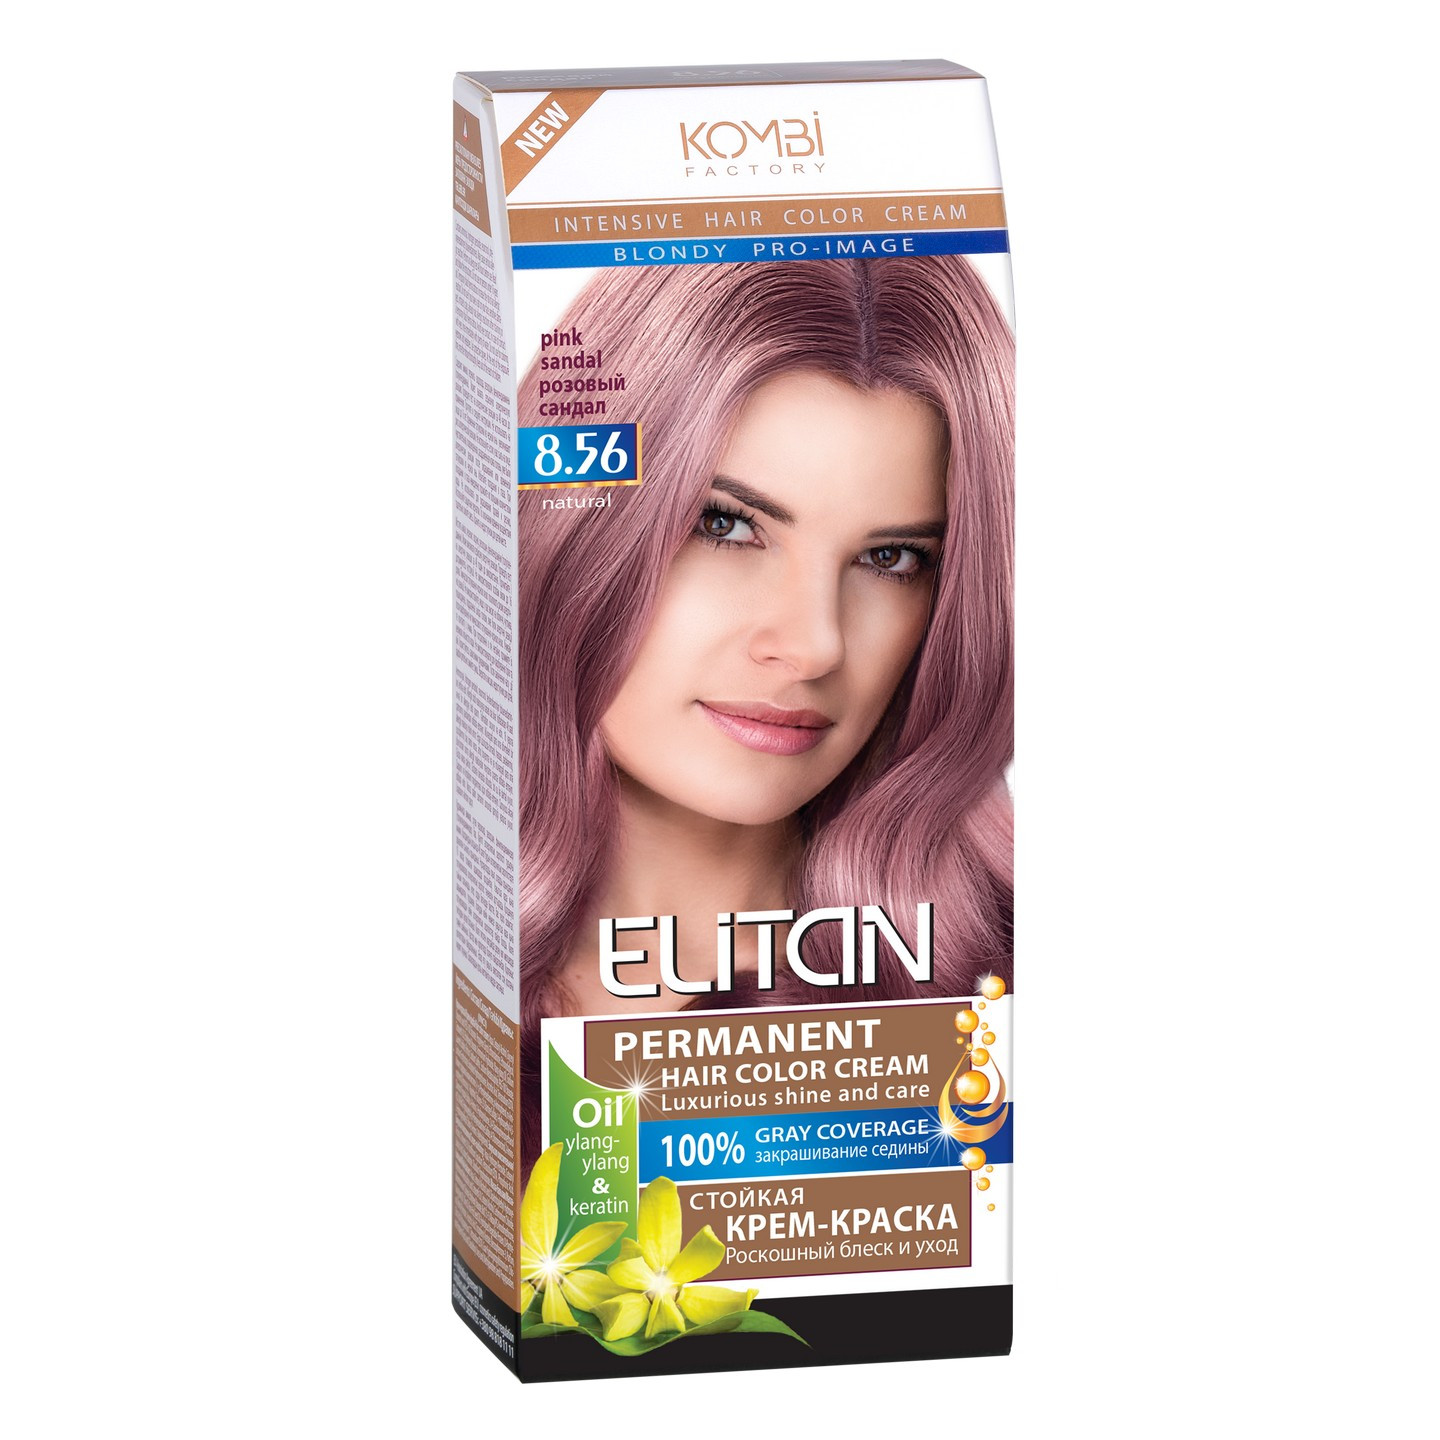 ELITAN permanentná krémová farba na vlasy 8.56 -Pink Sandal 